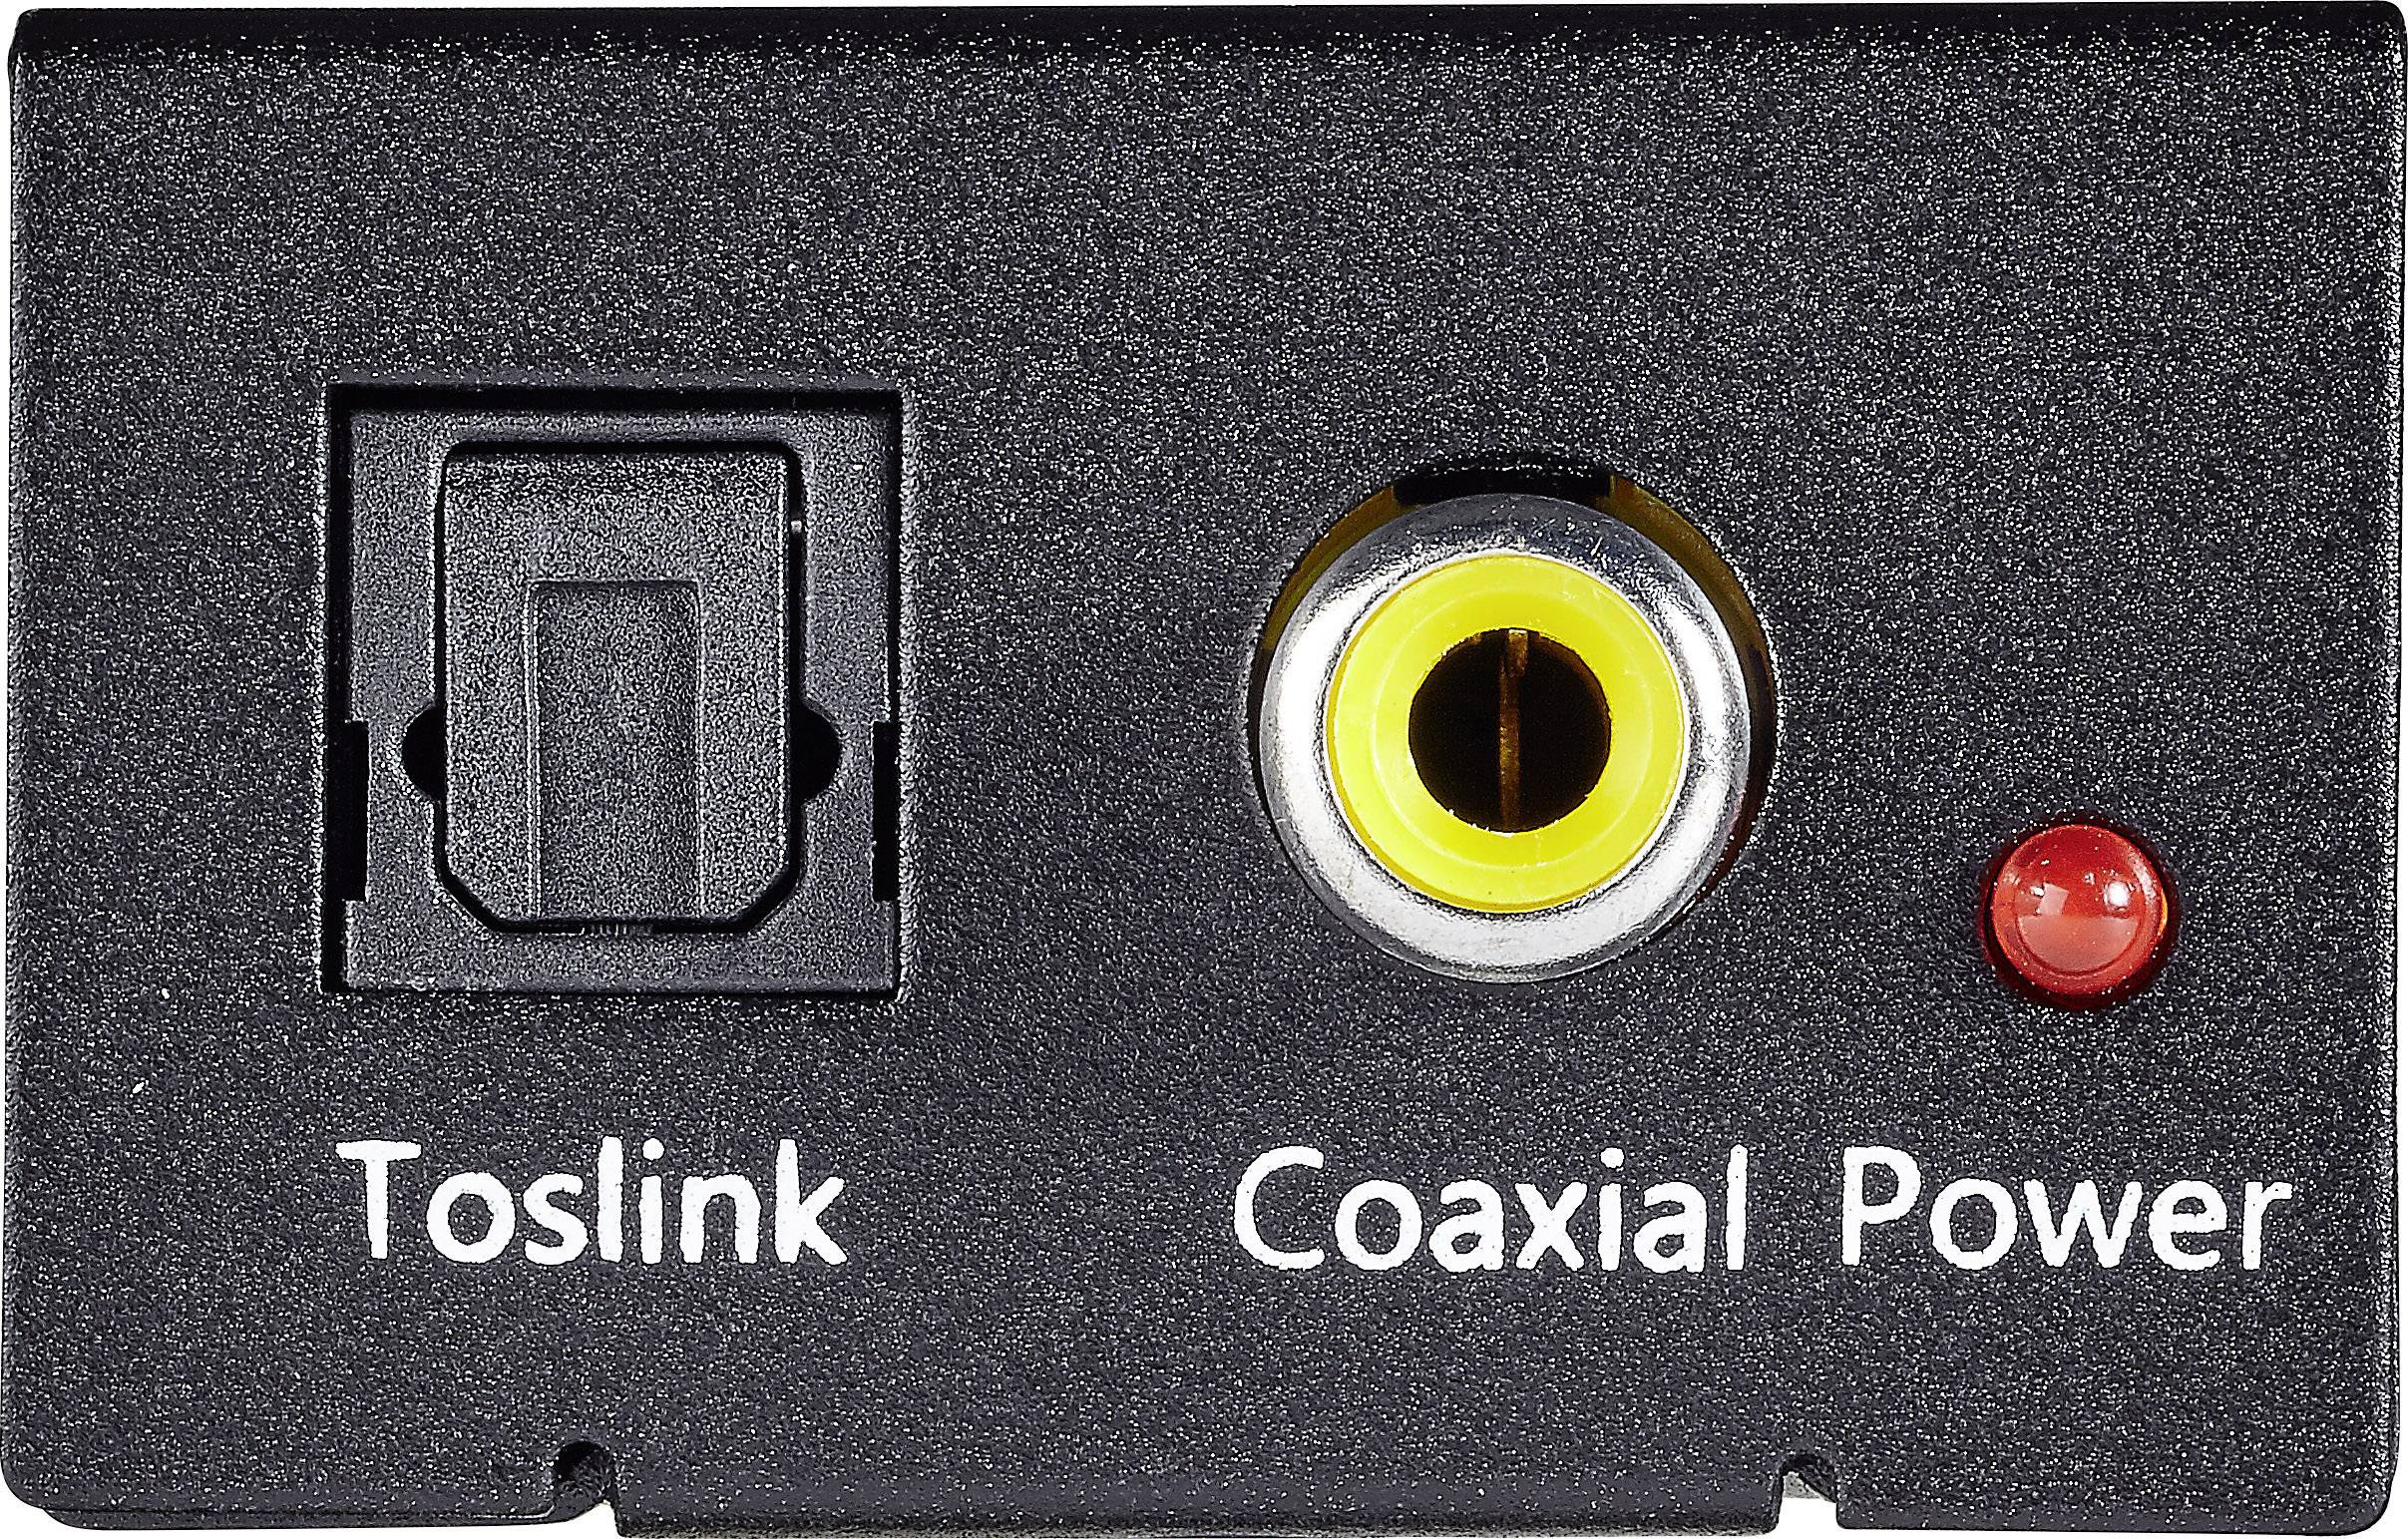 Spdif coaxial. Toslink (s/PDIF оптический). Toslink x96s. Toslink s/PDIF разъем. RCA (S/PDIF коаксиальный).